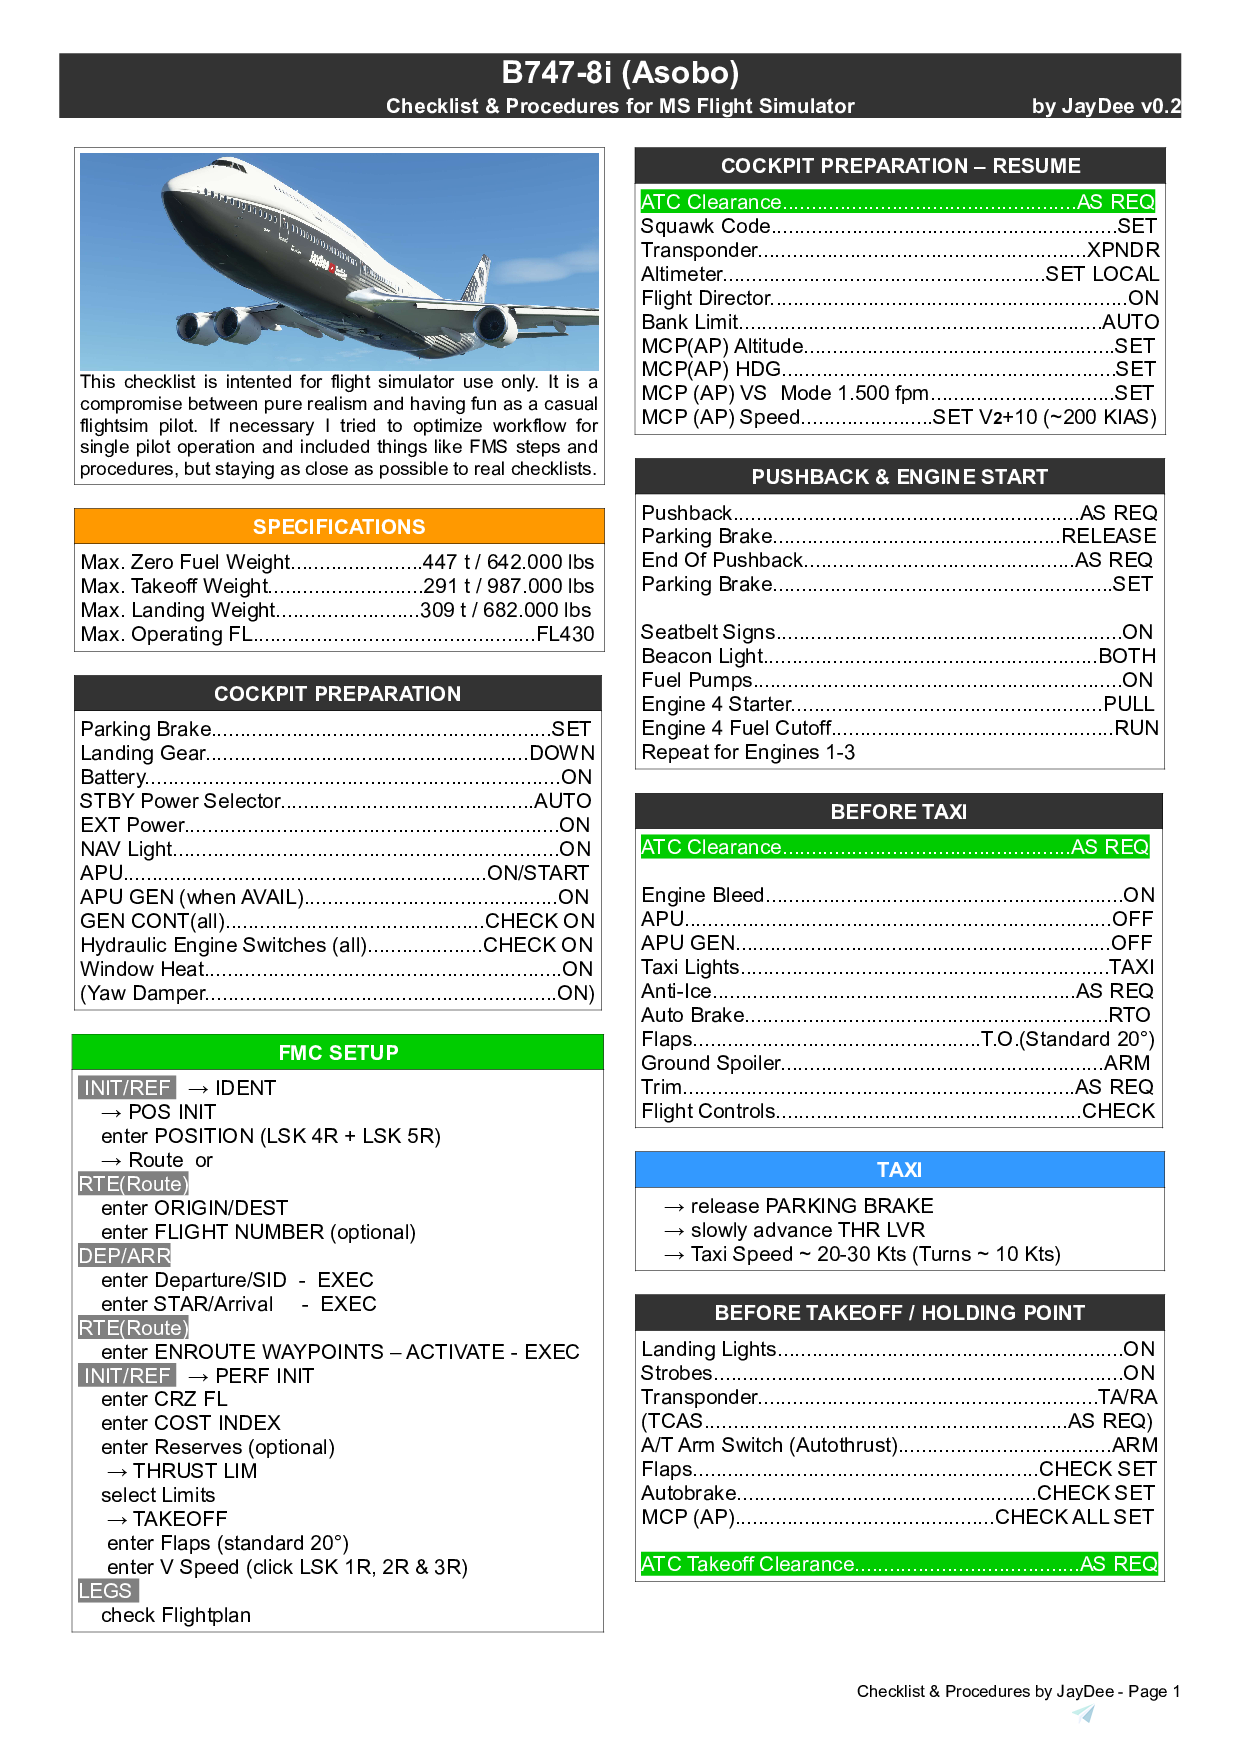 pmdg 747 checklist